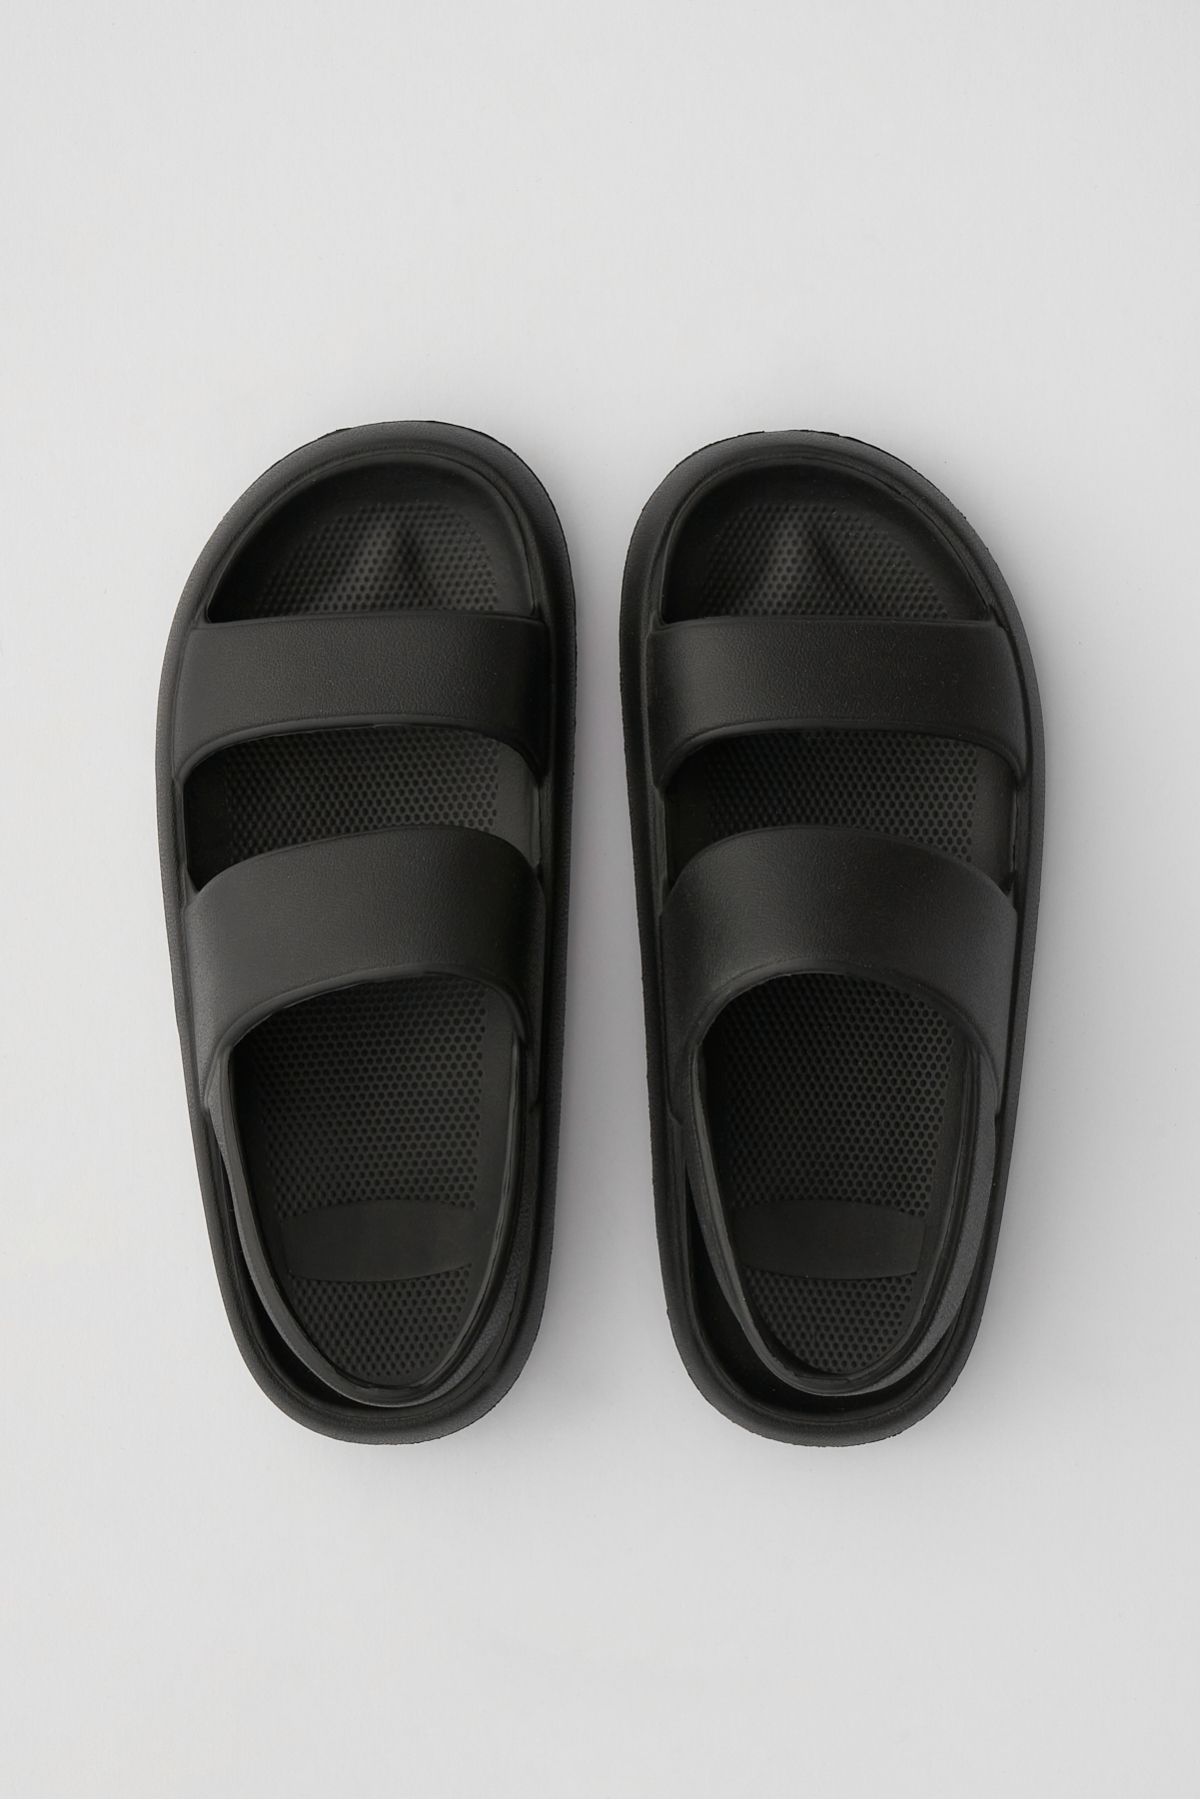 Ozyo Masai Siyah Çift Bant Eva Plaj Günlük Yazlık Sandalet Terlik